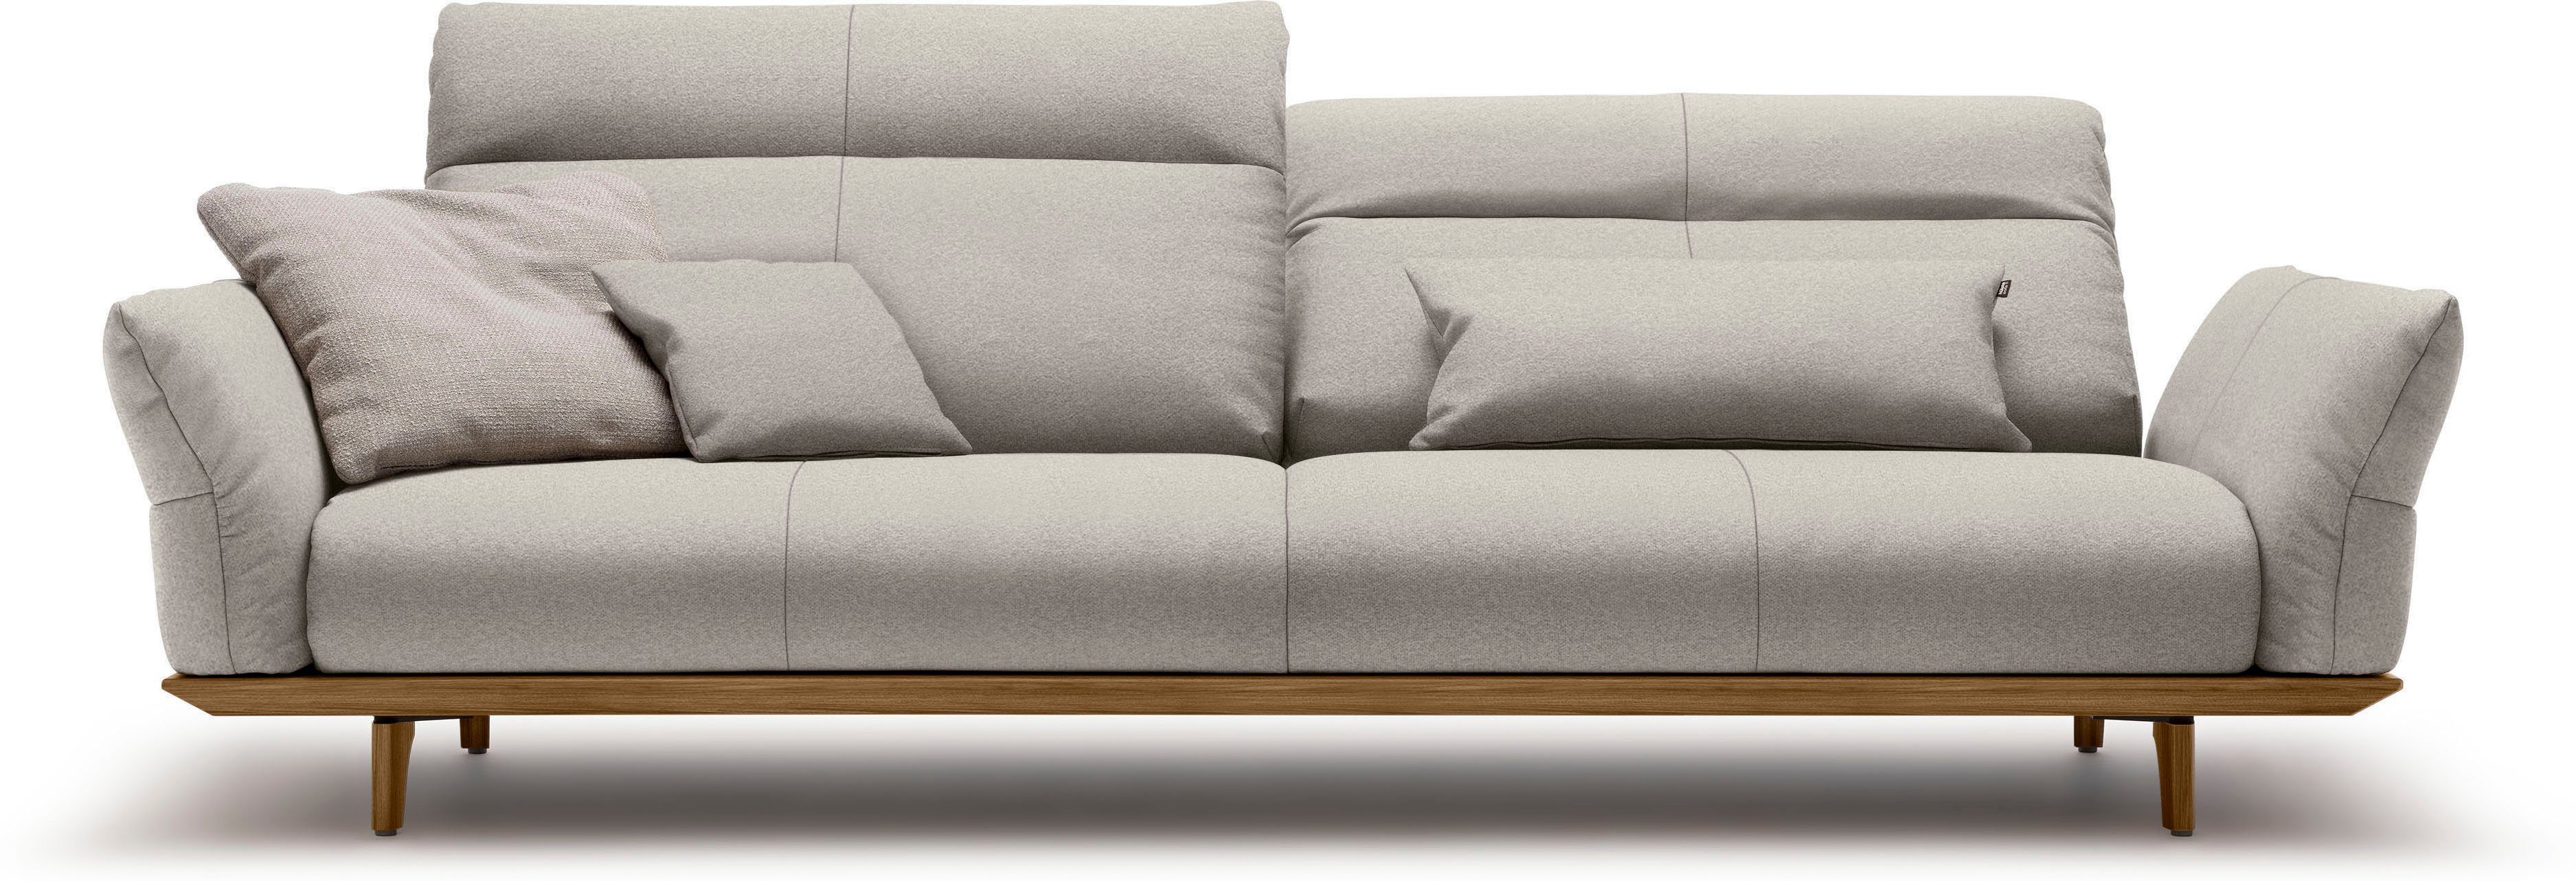 Nussbaum, sofa hs.460, cm 248 Sockel Nussbaum, Füße 4-Sitzer in Breite hülsta